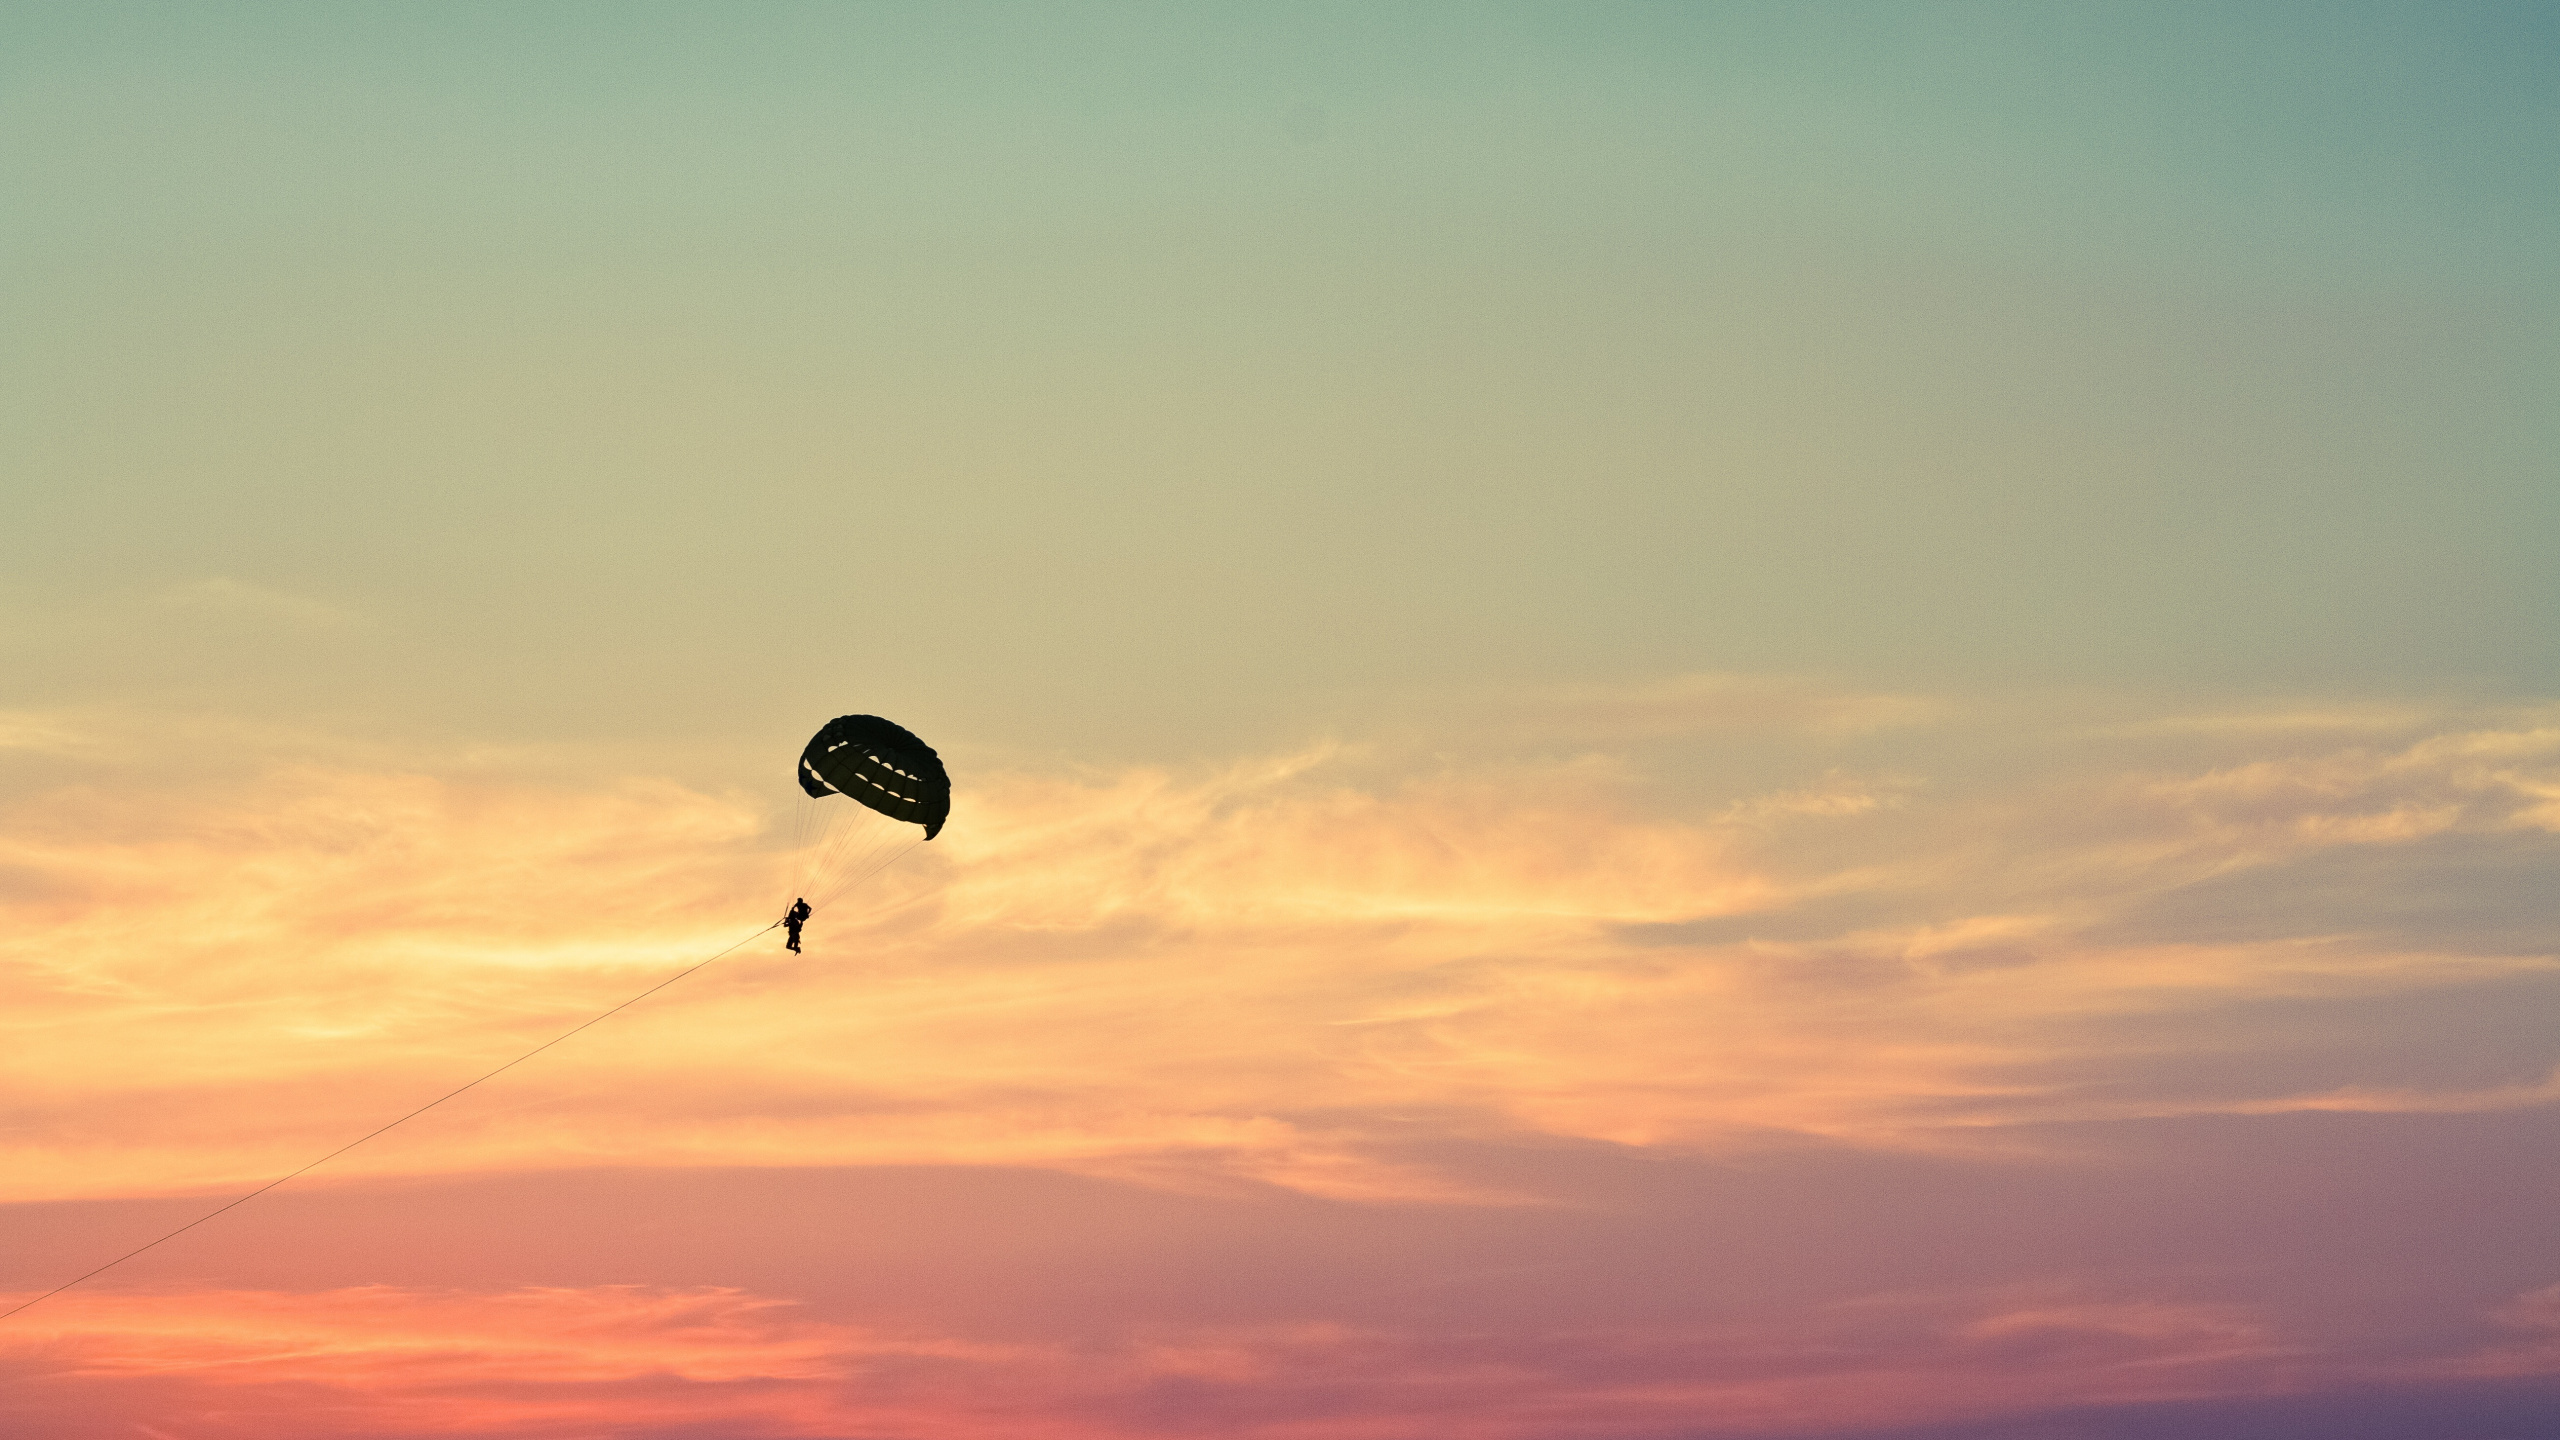 降落伞, 空中运动, 极限运动, 地平线, 伞兵 壁纸 2560x1440 允许